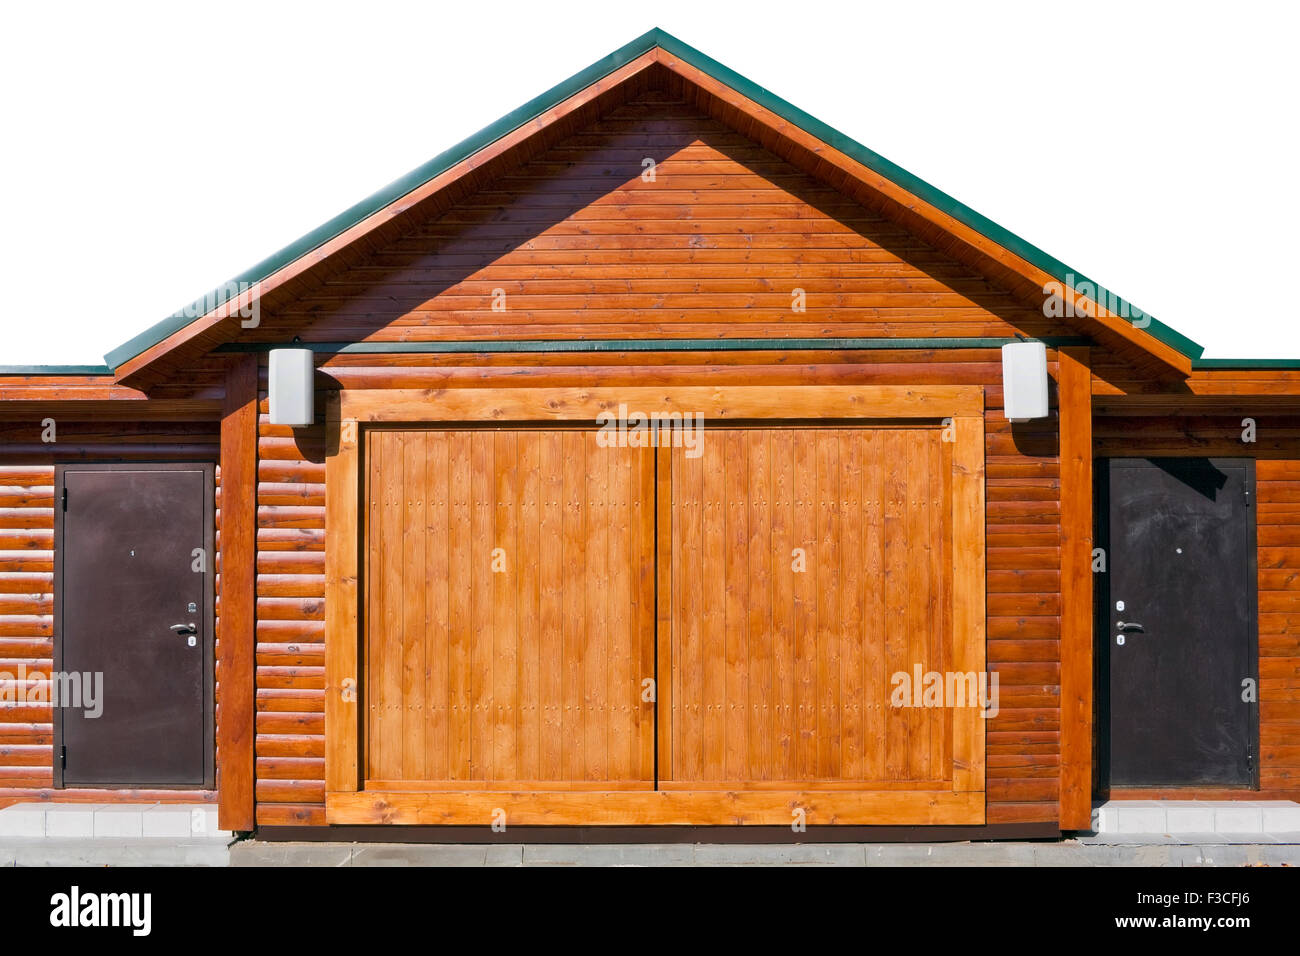 Moderno stile rustico- tettoia in legno con acciaio porte armati. Giornata di sole. Parzialmente isolato villaggio oggetto Foto Stock